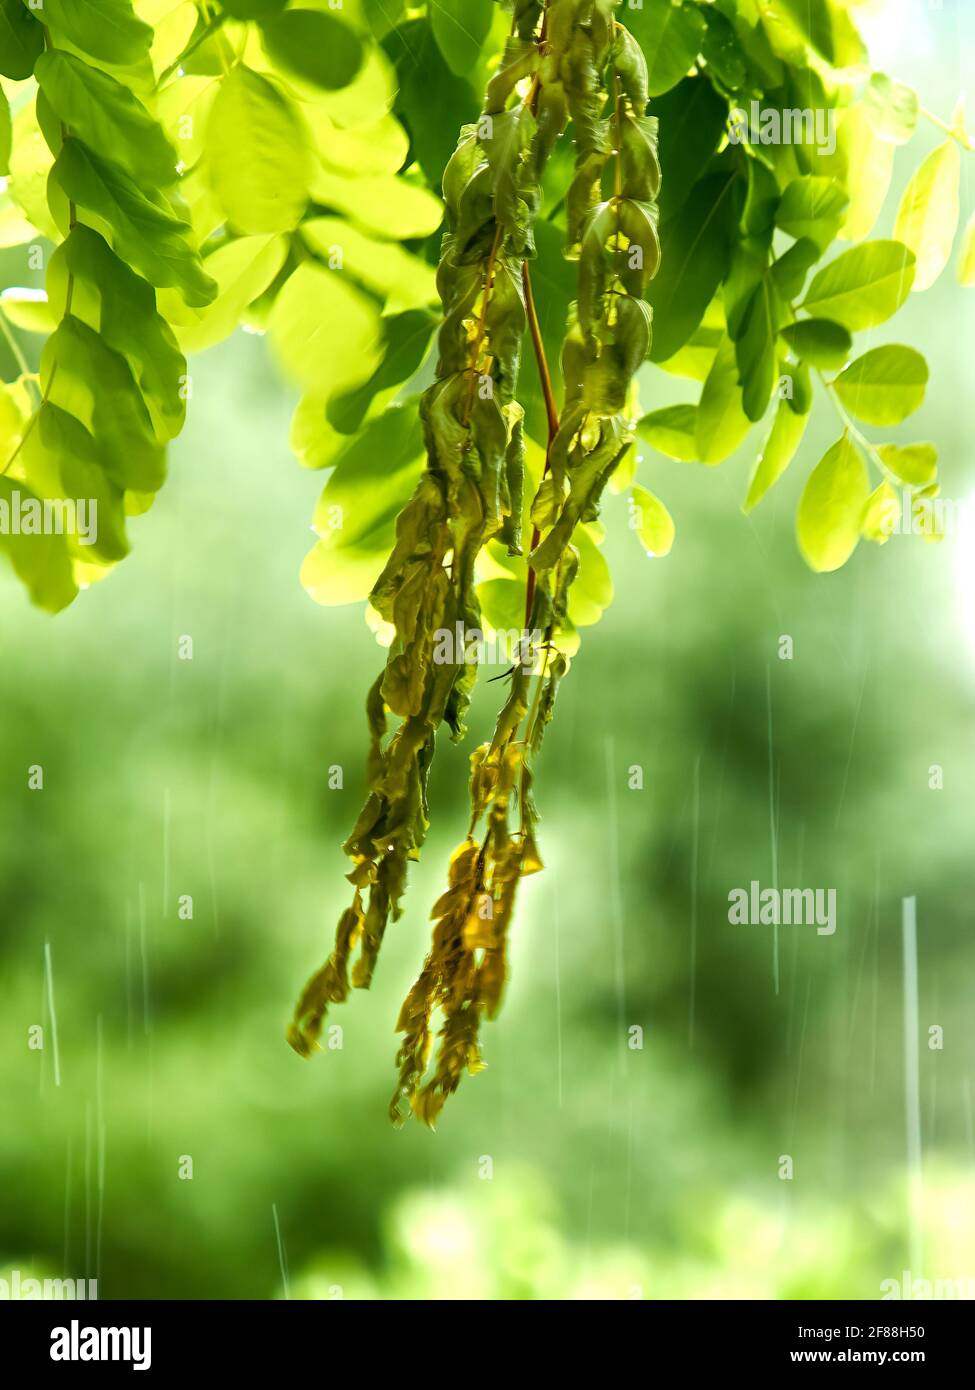 Primo piano dei baccelli di semi di un Locust Tree colpiti dal diluvio di una tempesta estiva, con il movimento delle gocce di pioggia congelate dall'otturatore rapido. Foto Stock